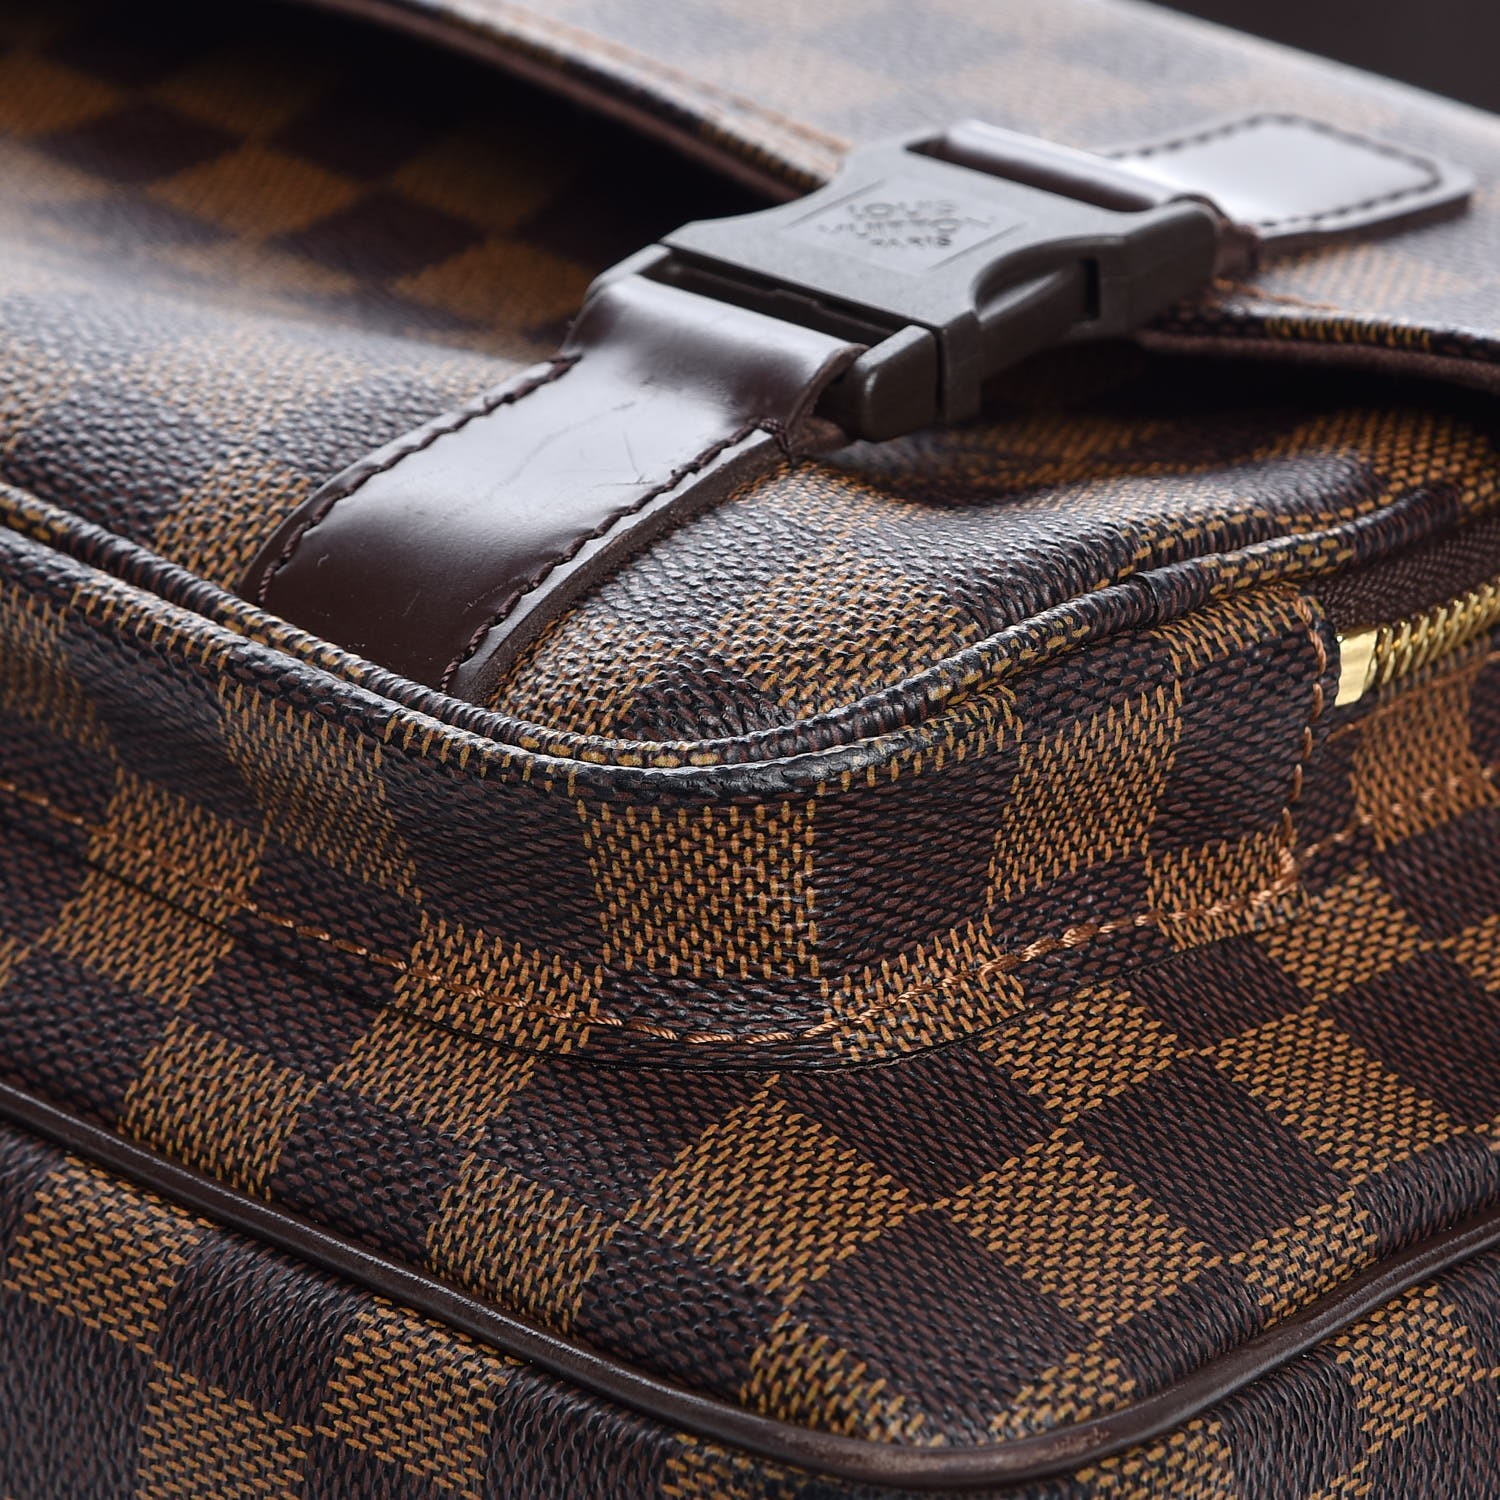 LOUIS VUITTON Louis Vuitton Damier Melville Shoulder Bag N51125